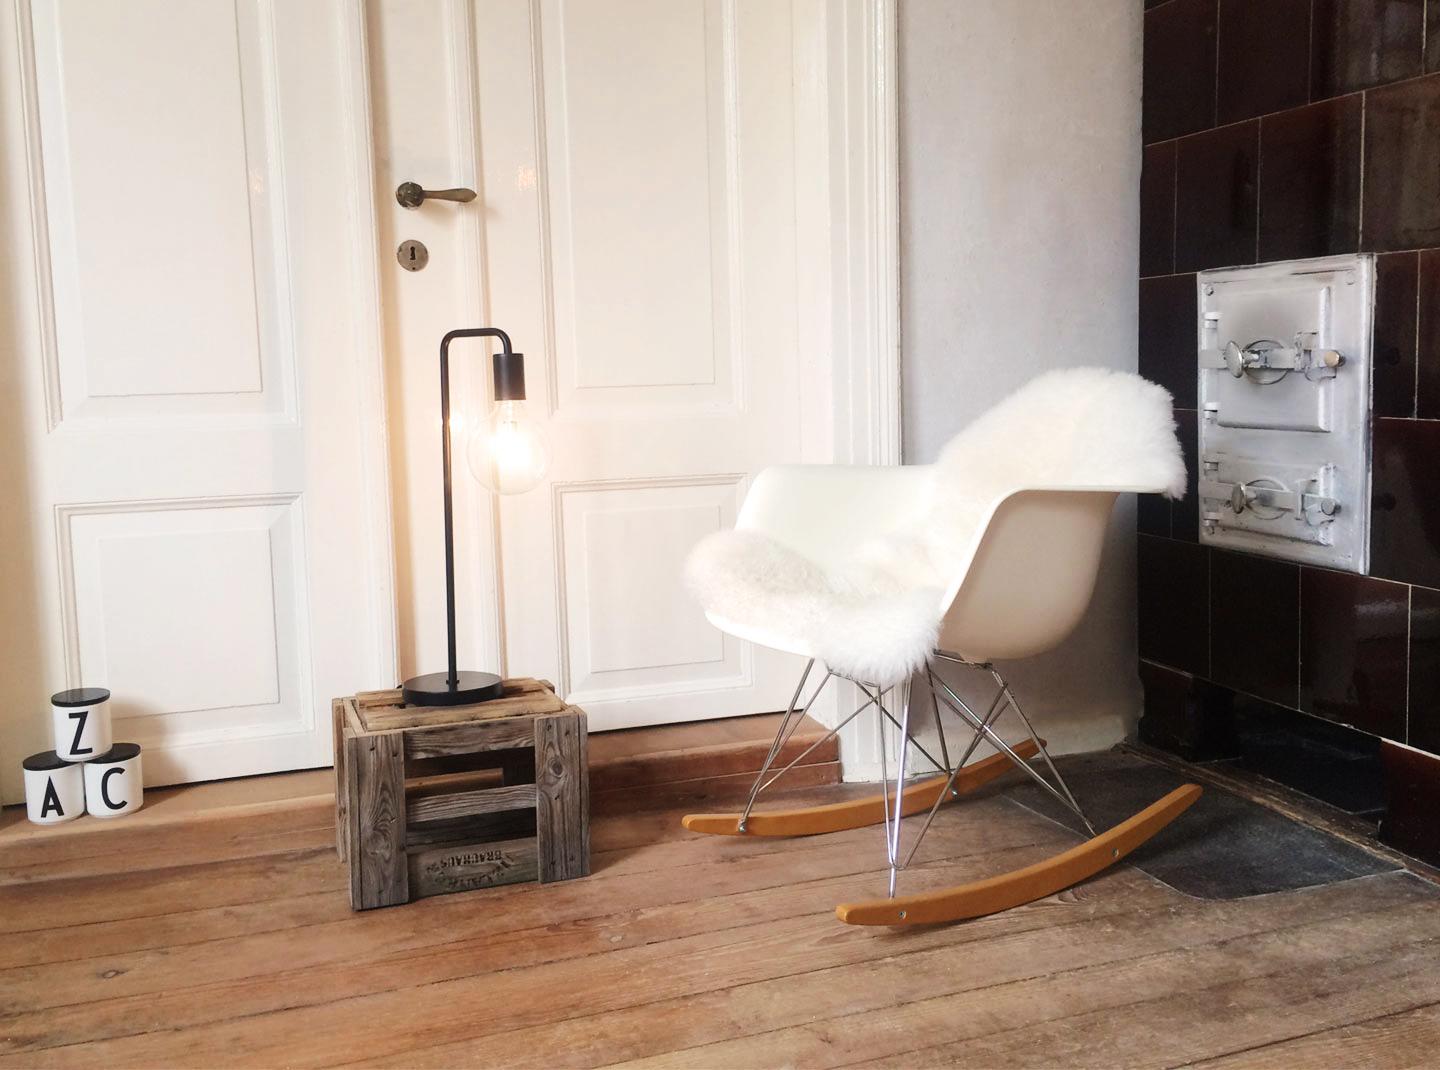 Weißer Schaukelstuhl in Kaminecke #retro #vintage #wohnzimmer #schaukelstuhl #skandinavischesdesign ©99chairs GmbH